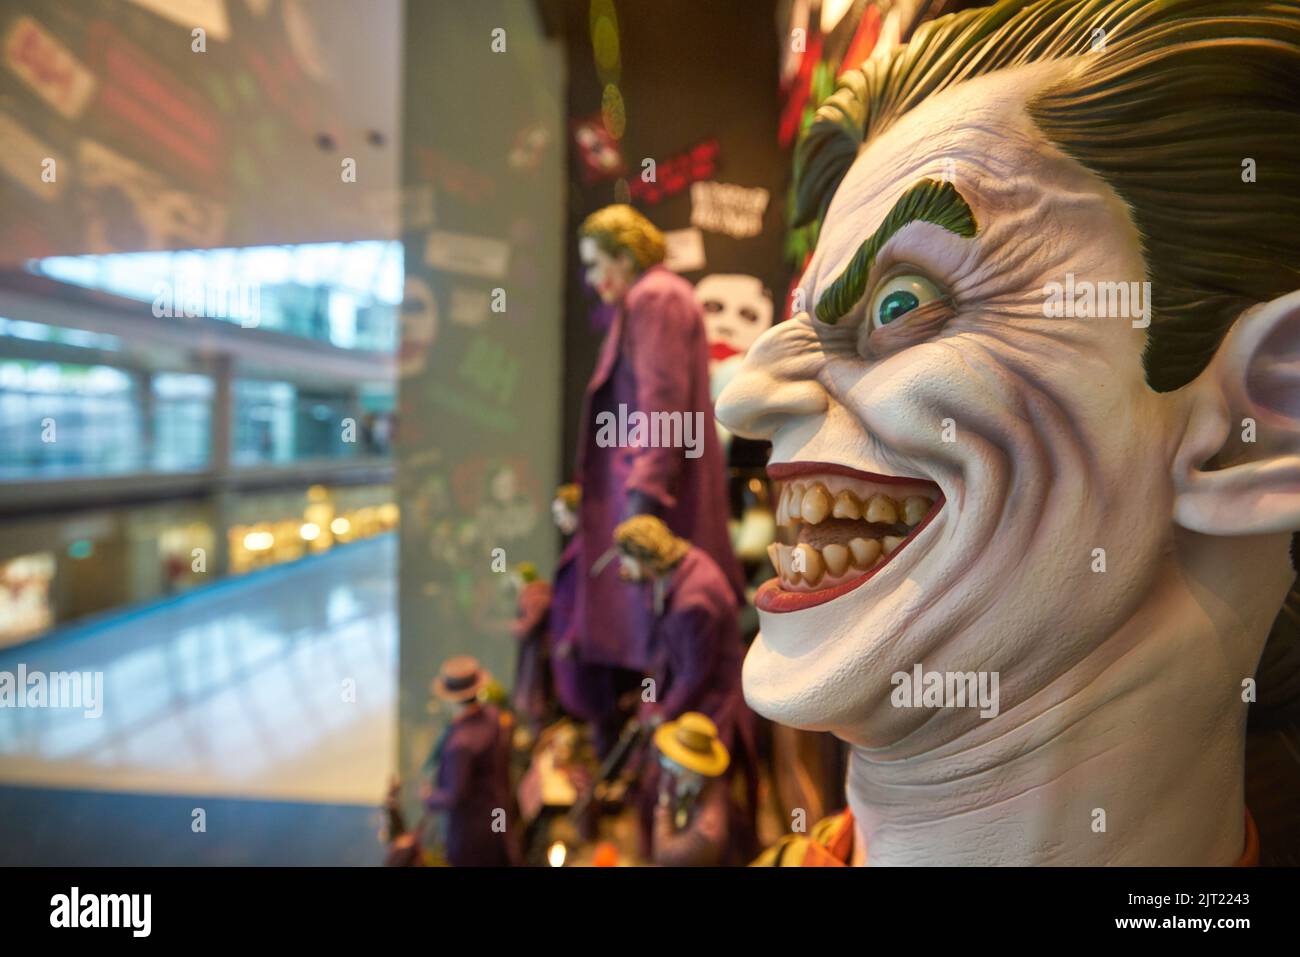 SINGAPORE - 20 GENNAIO 2020: Primo piano della scultura della testa a grandezza naturale Joker in mostra nel Super Heroes Cafe della DC Comics presso lo Shoppes di Marina Bay S. Foto Stock